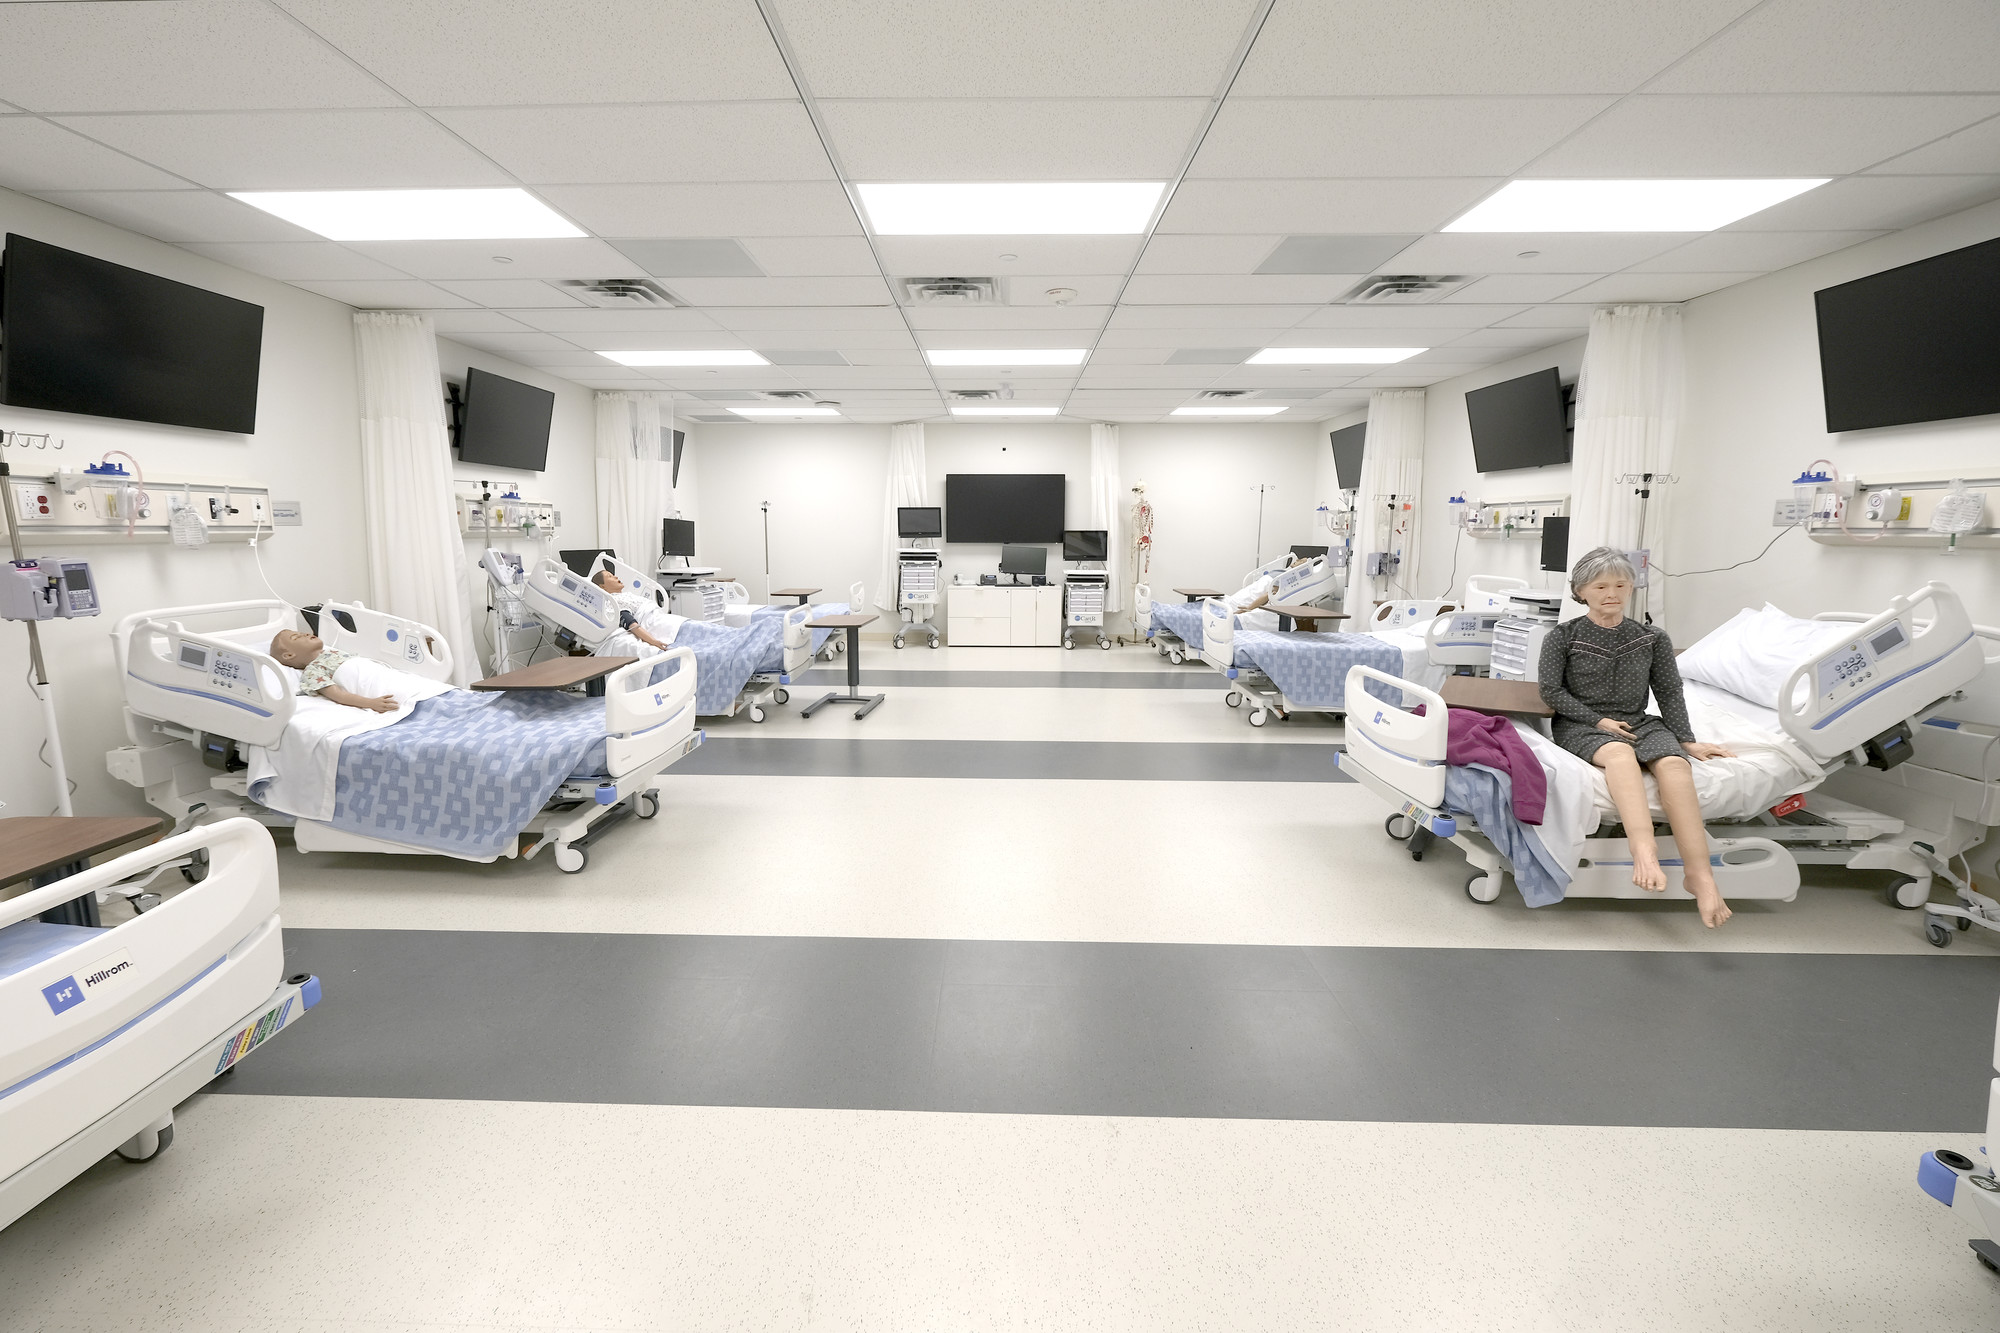 A room set up as a hospital ICU unit